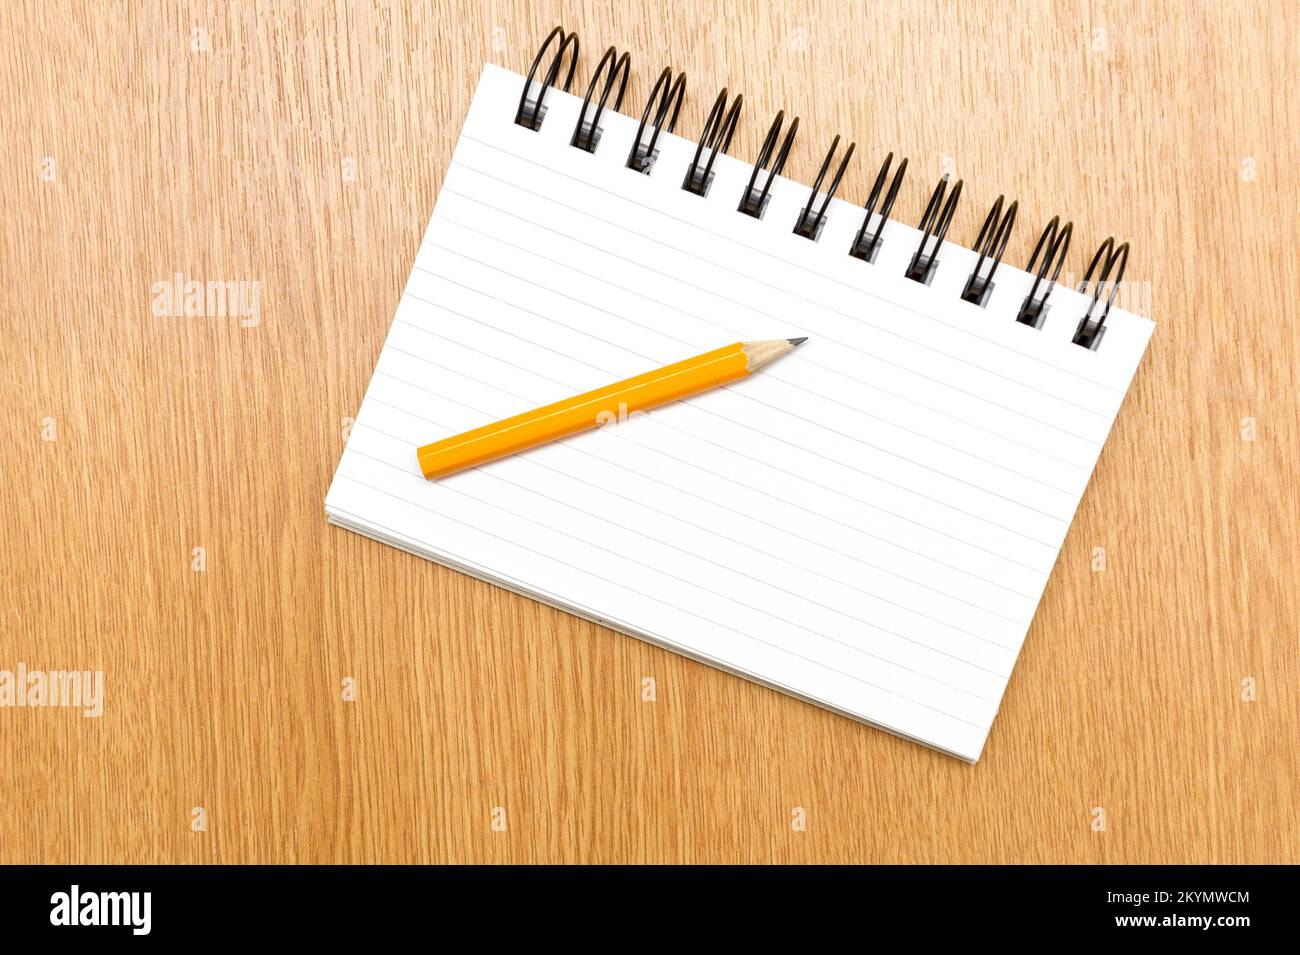 Flat : permet de placer l'image d'un bloc-notes, d'un crayon, d'un taille-crayon et d'une gomme sur un bureau Banque D'Images